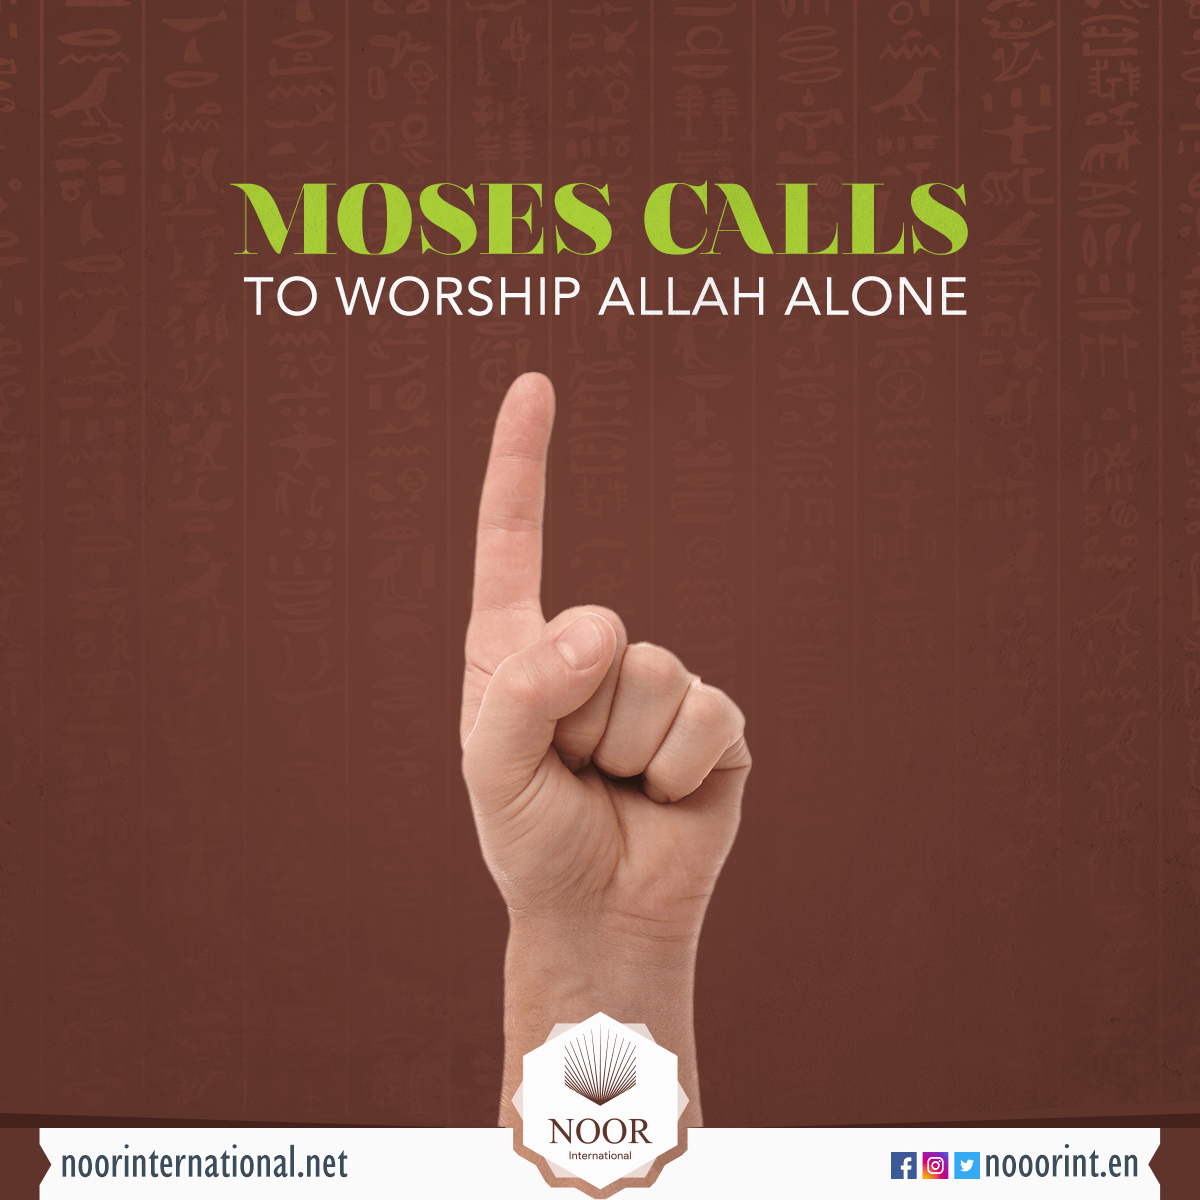 Moses calls to worship Allah alone